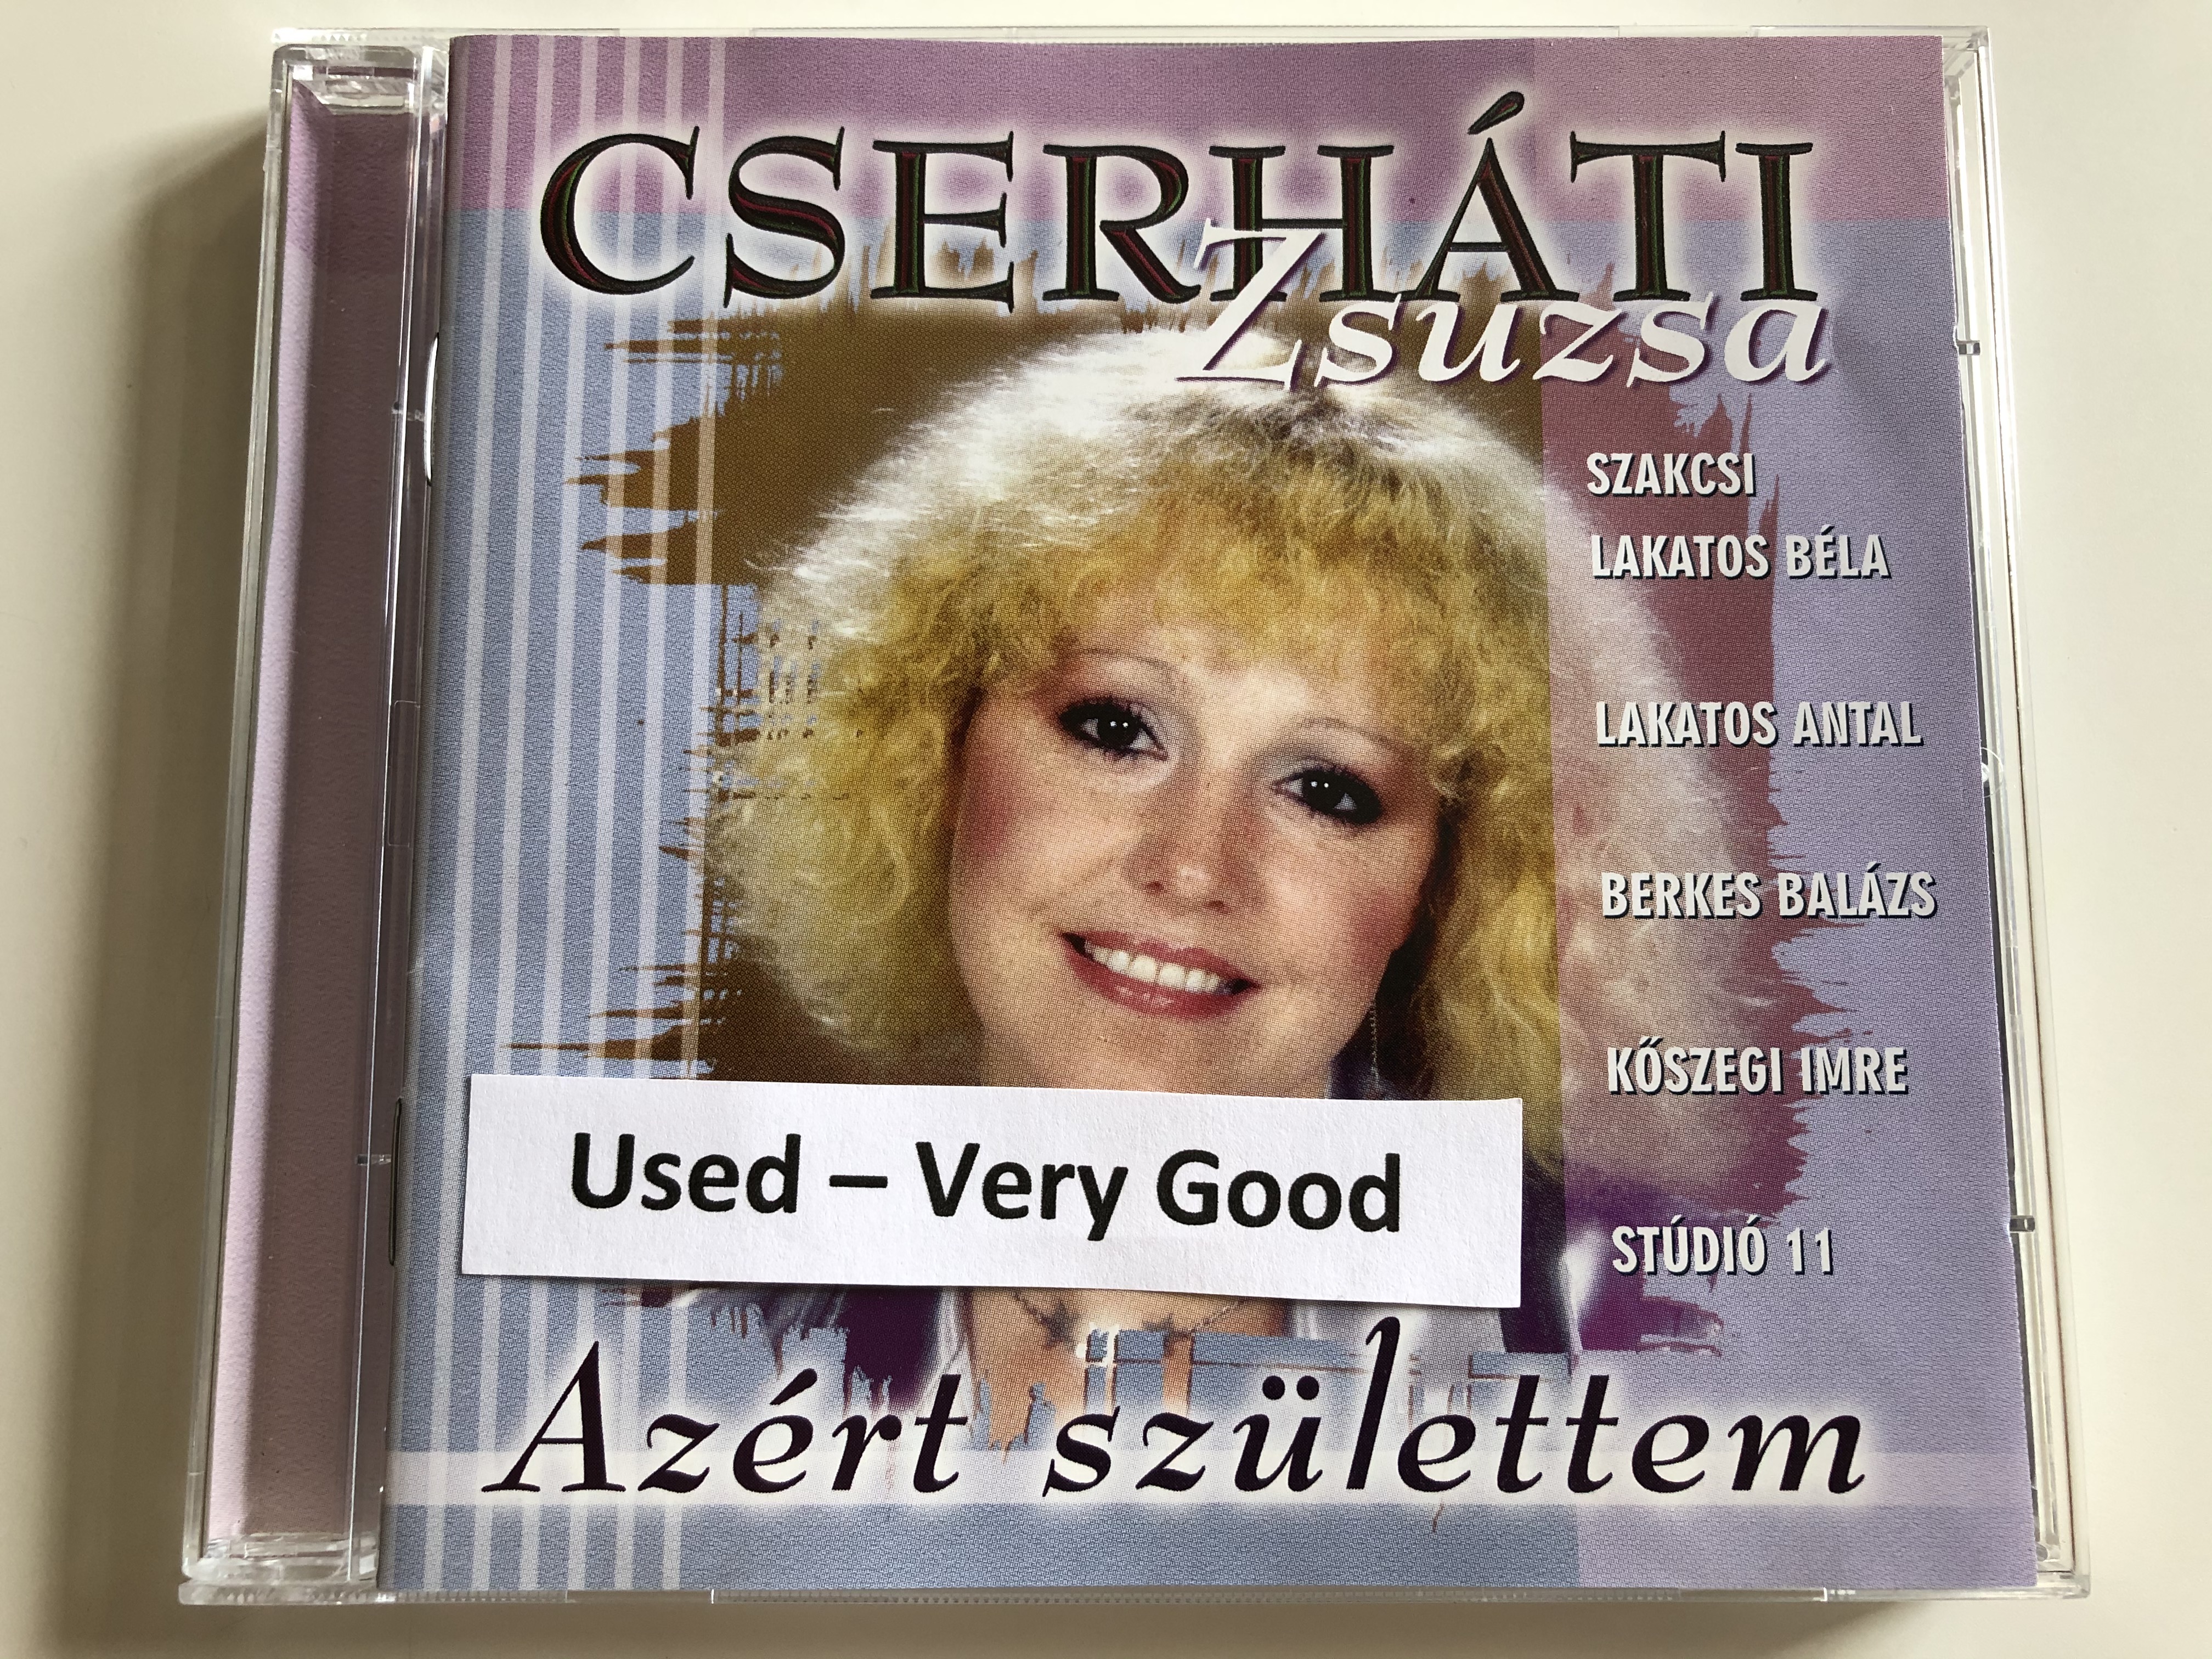 cserh-ti-zsuzsa-az-rt-sz-lettem-szakcsi-lakatos-bela-lakatos-antal-berkes-balazs-koszegi-imre-studio-11-hungaroton-audio-cd-2004-hcd-71177-1-.jpg